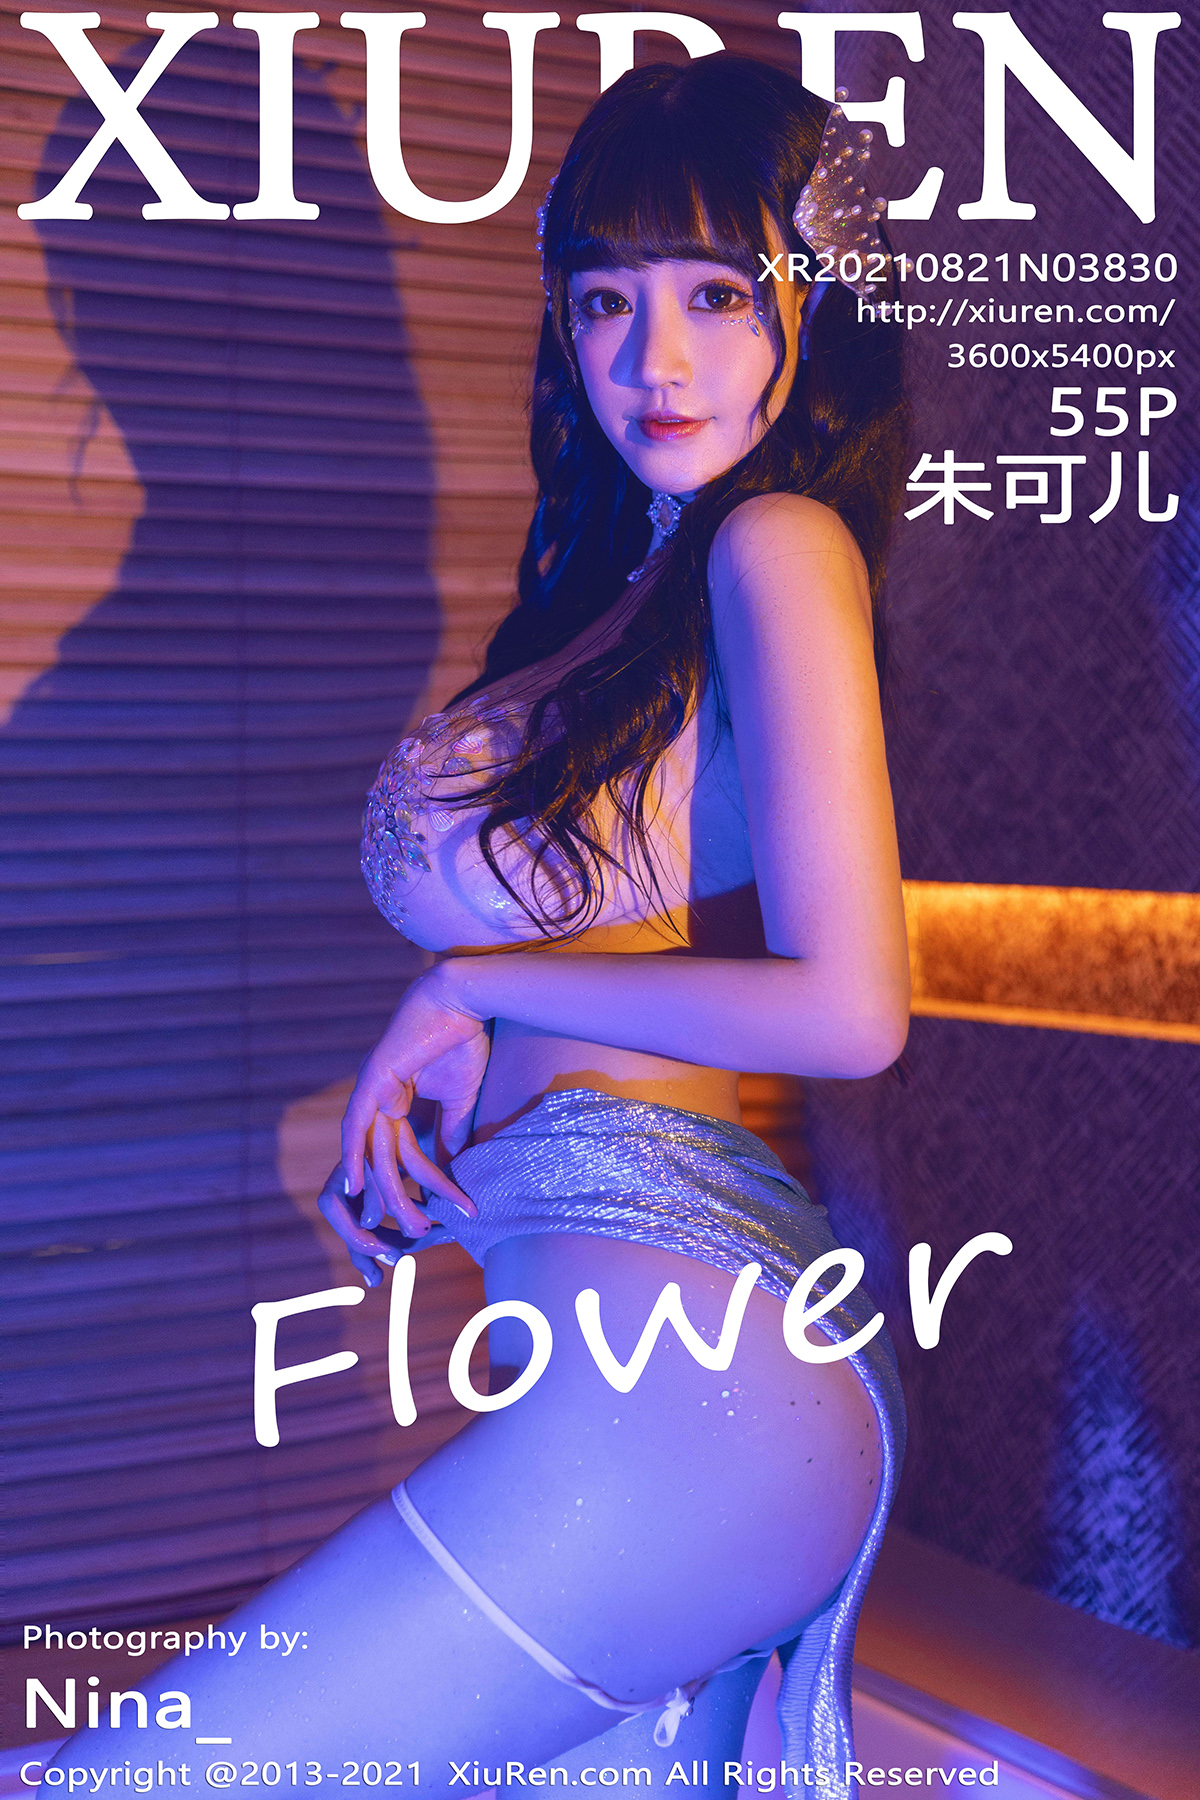 秀人 [XIUREN] 2021.08.21 朱可儿Flower